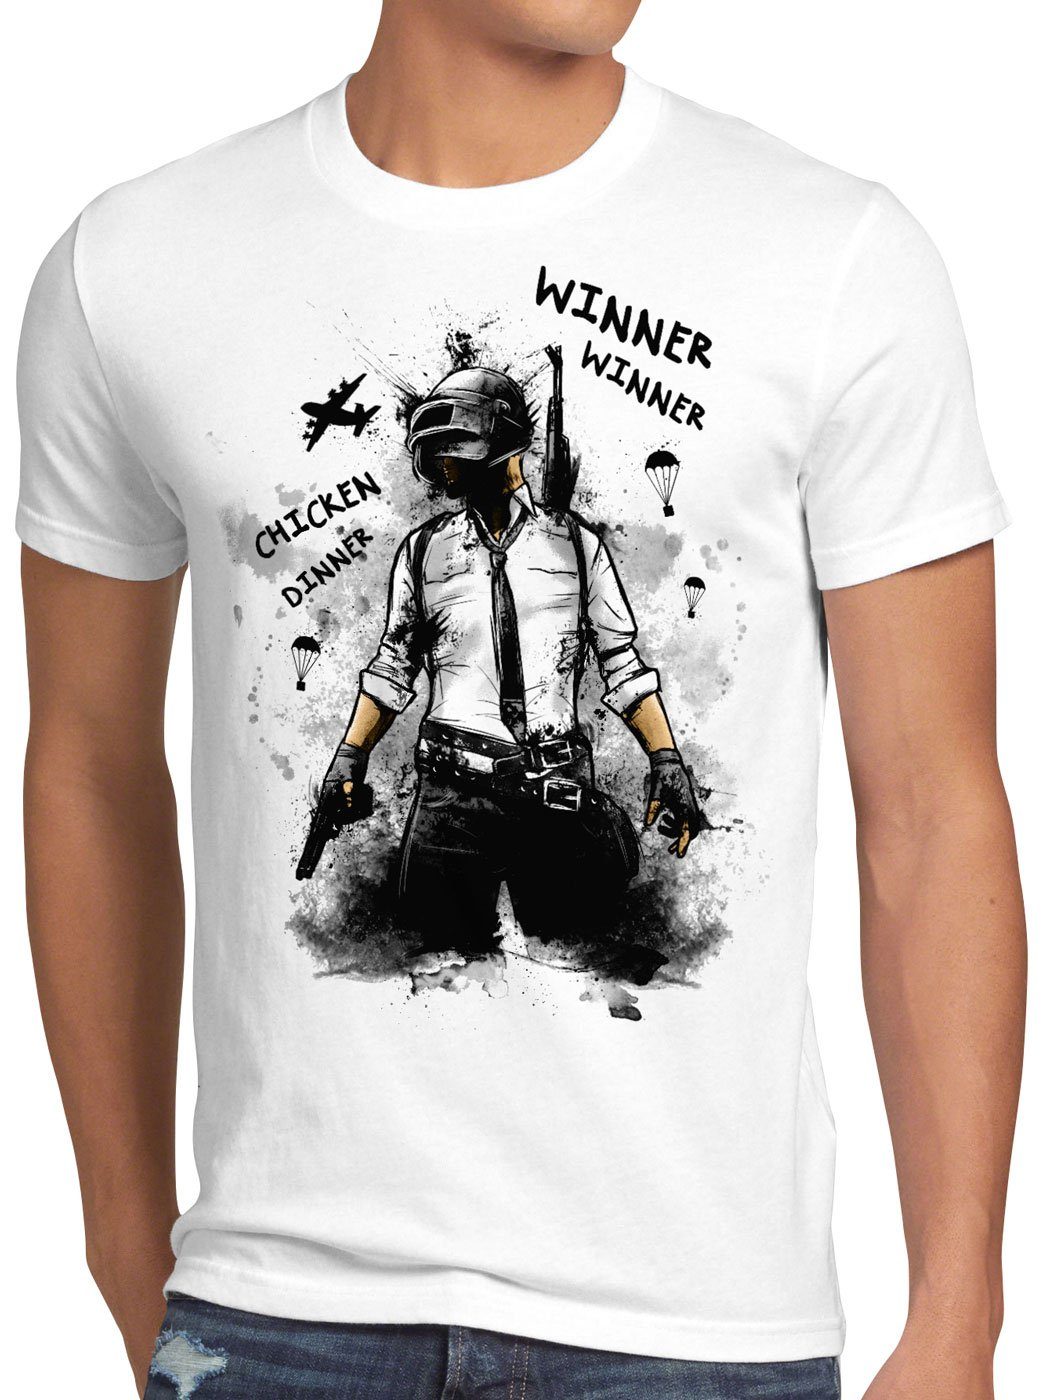 style3 Print-Shirt Herren T-Shirt Winner Gefecht battle royale pvp multiplayer online survival weiß